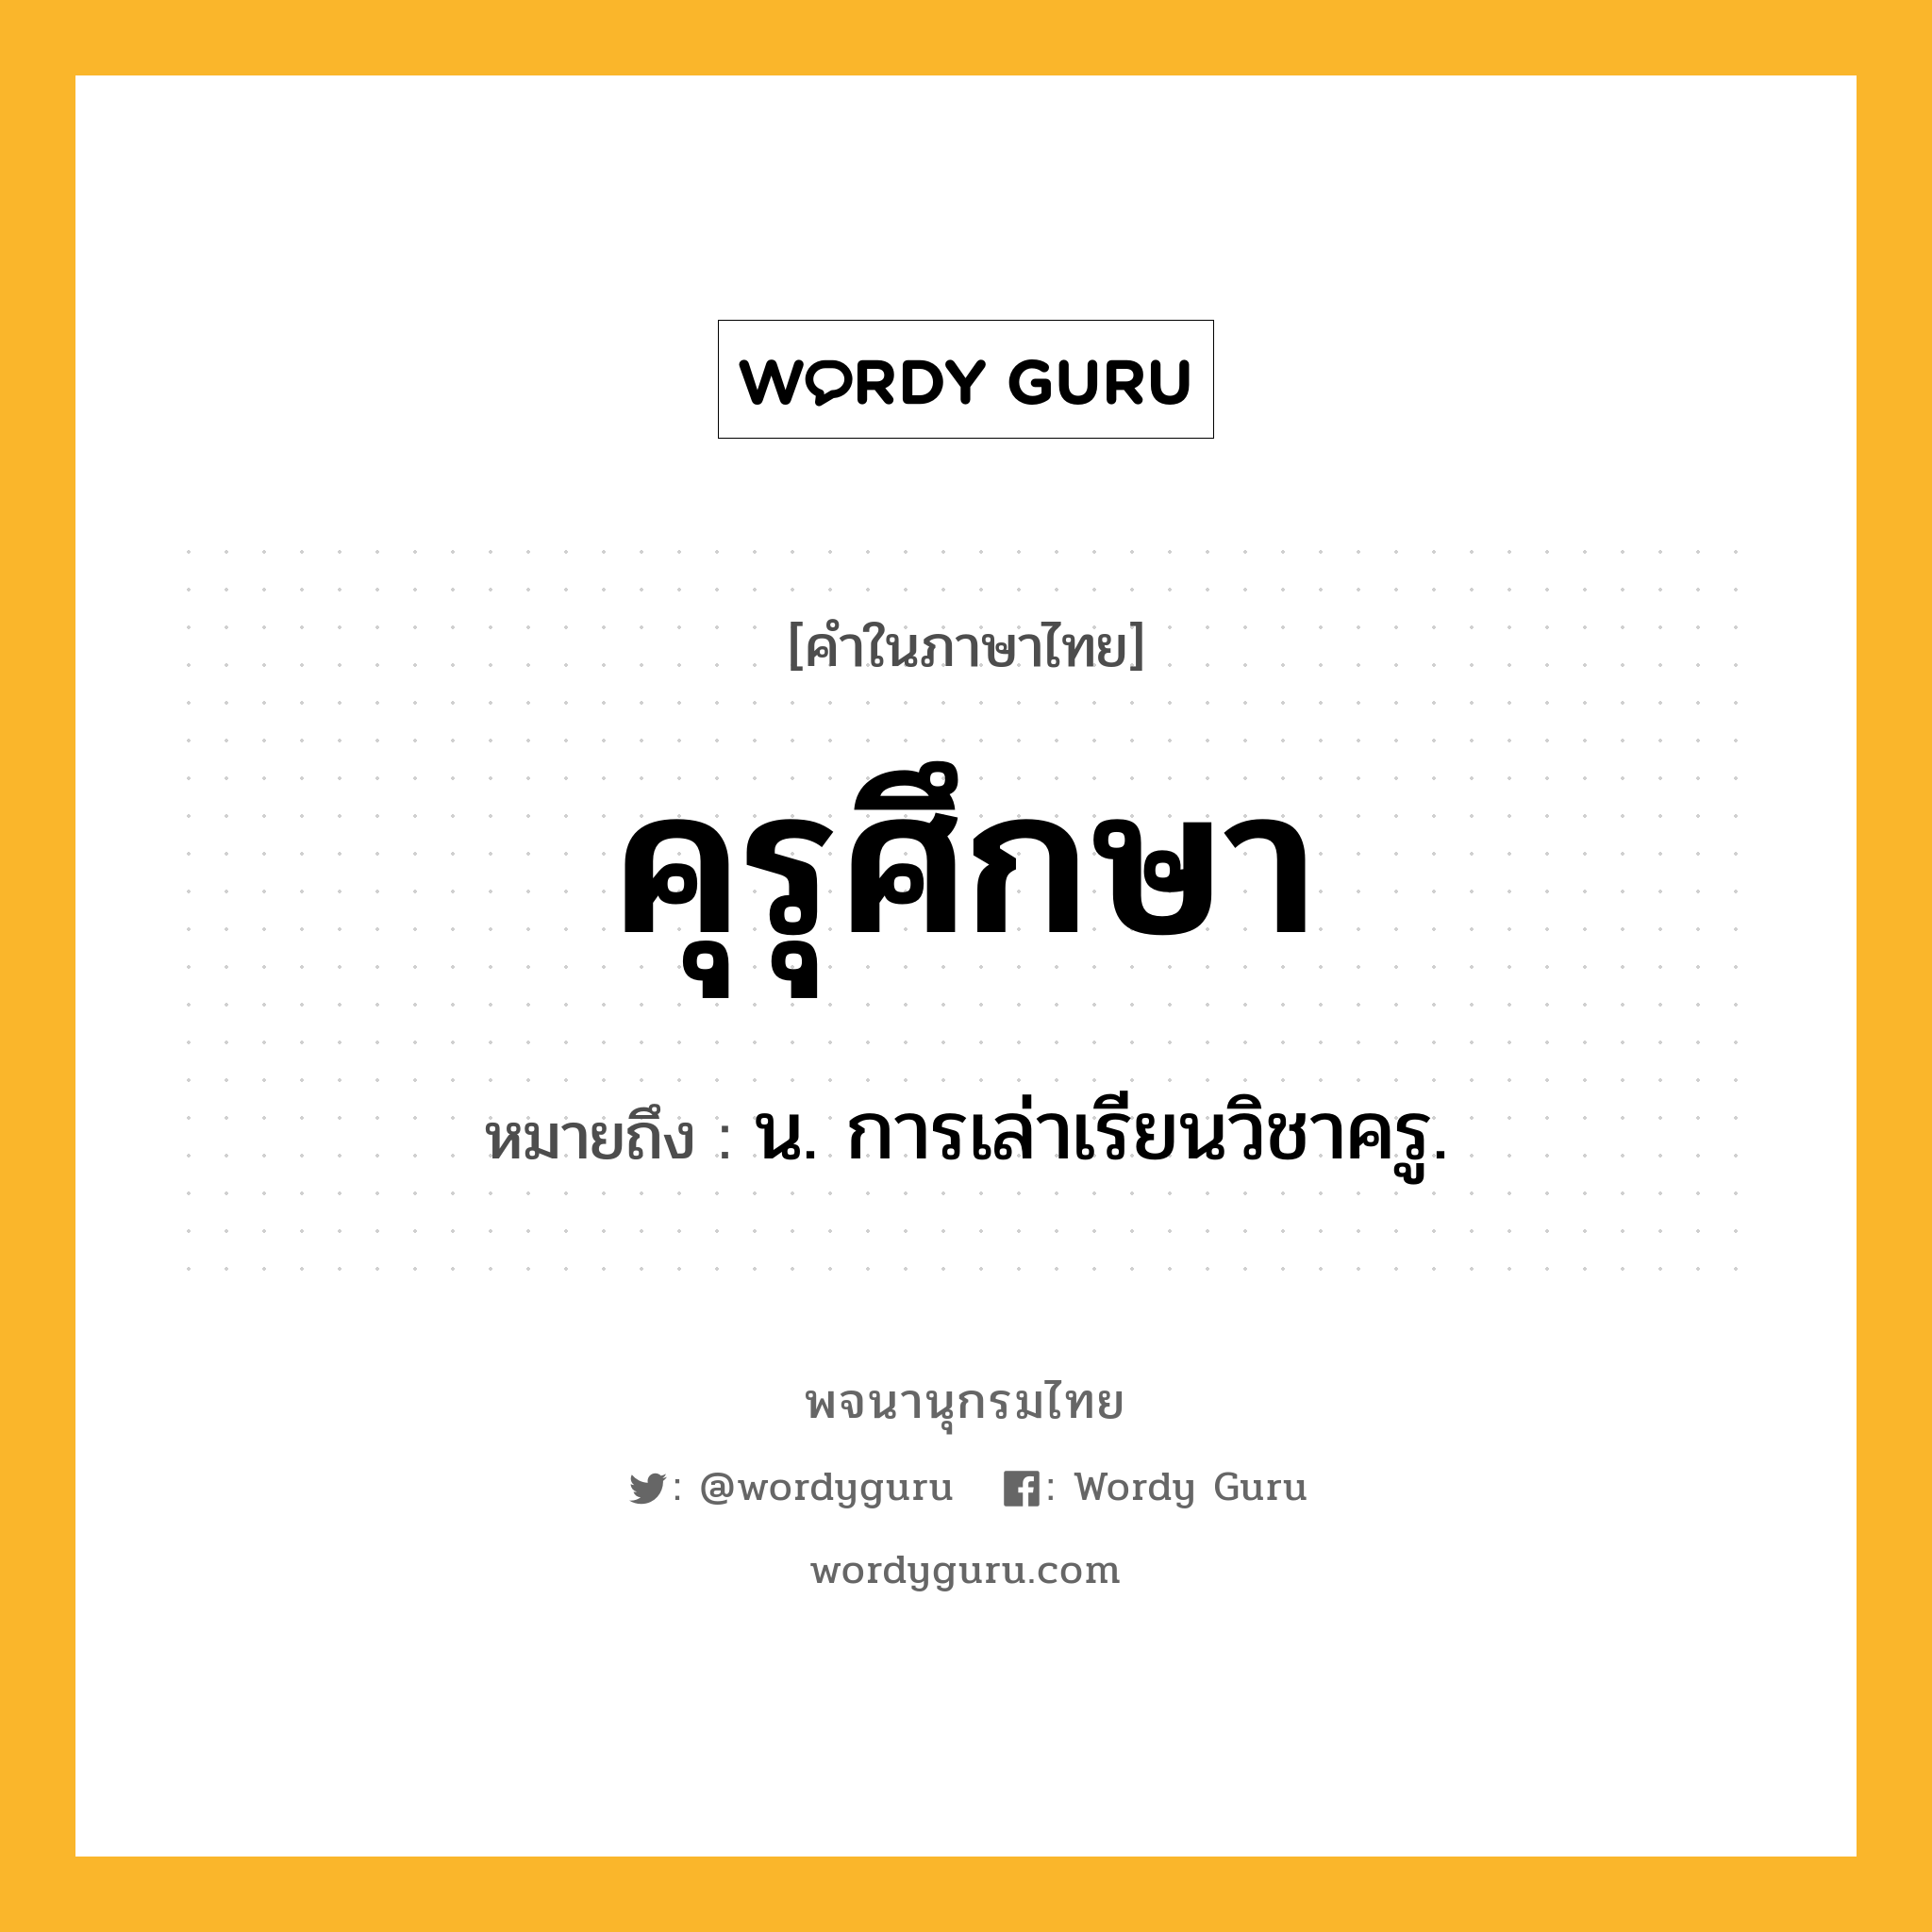 คุรุศึกษา ความหมาย หมายถึงอะไร?, คำในภาษาไทย คุรุศึกษา หมายถึง น. การเล่าเรียนวิชาครู.